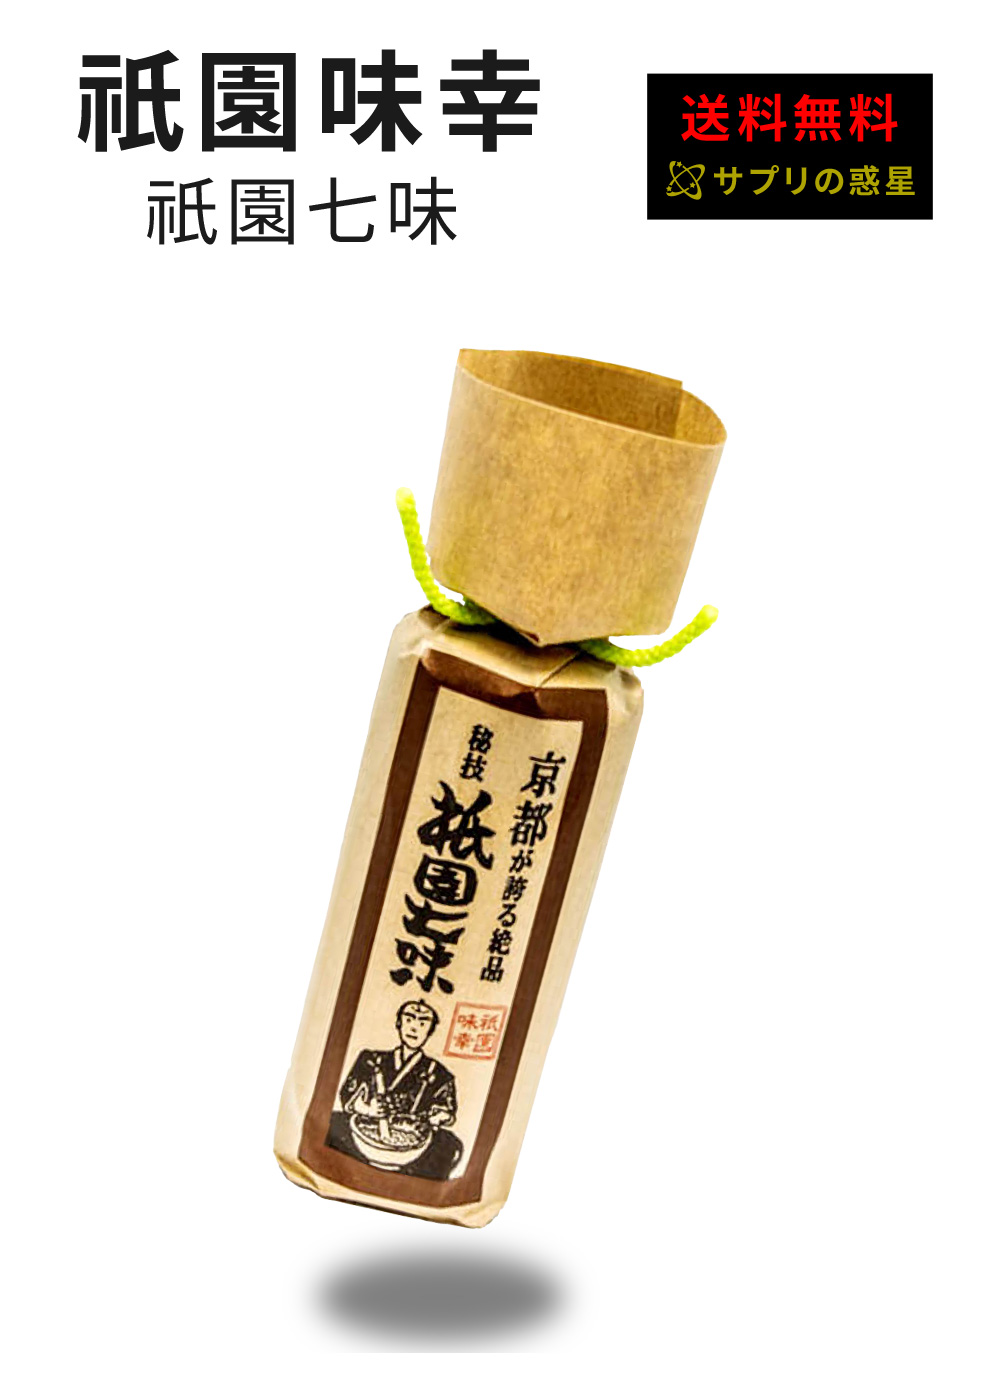 京都祇園味幸 祇園七味 22g 瓶 送料無料